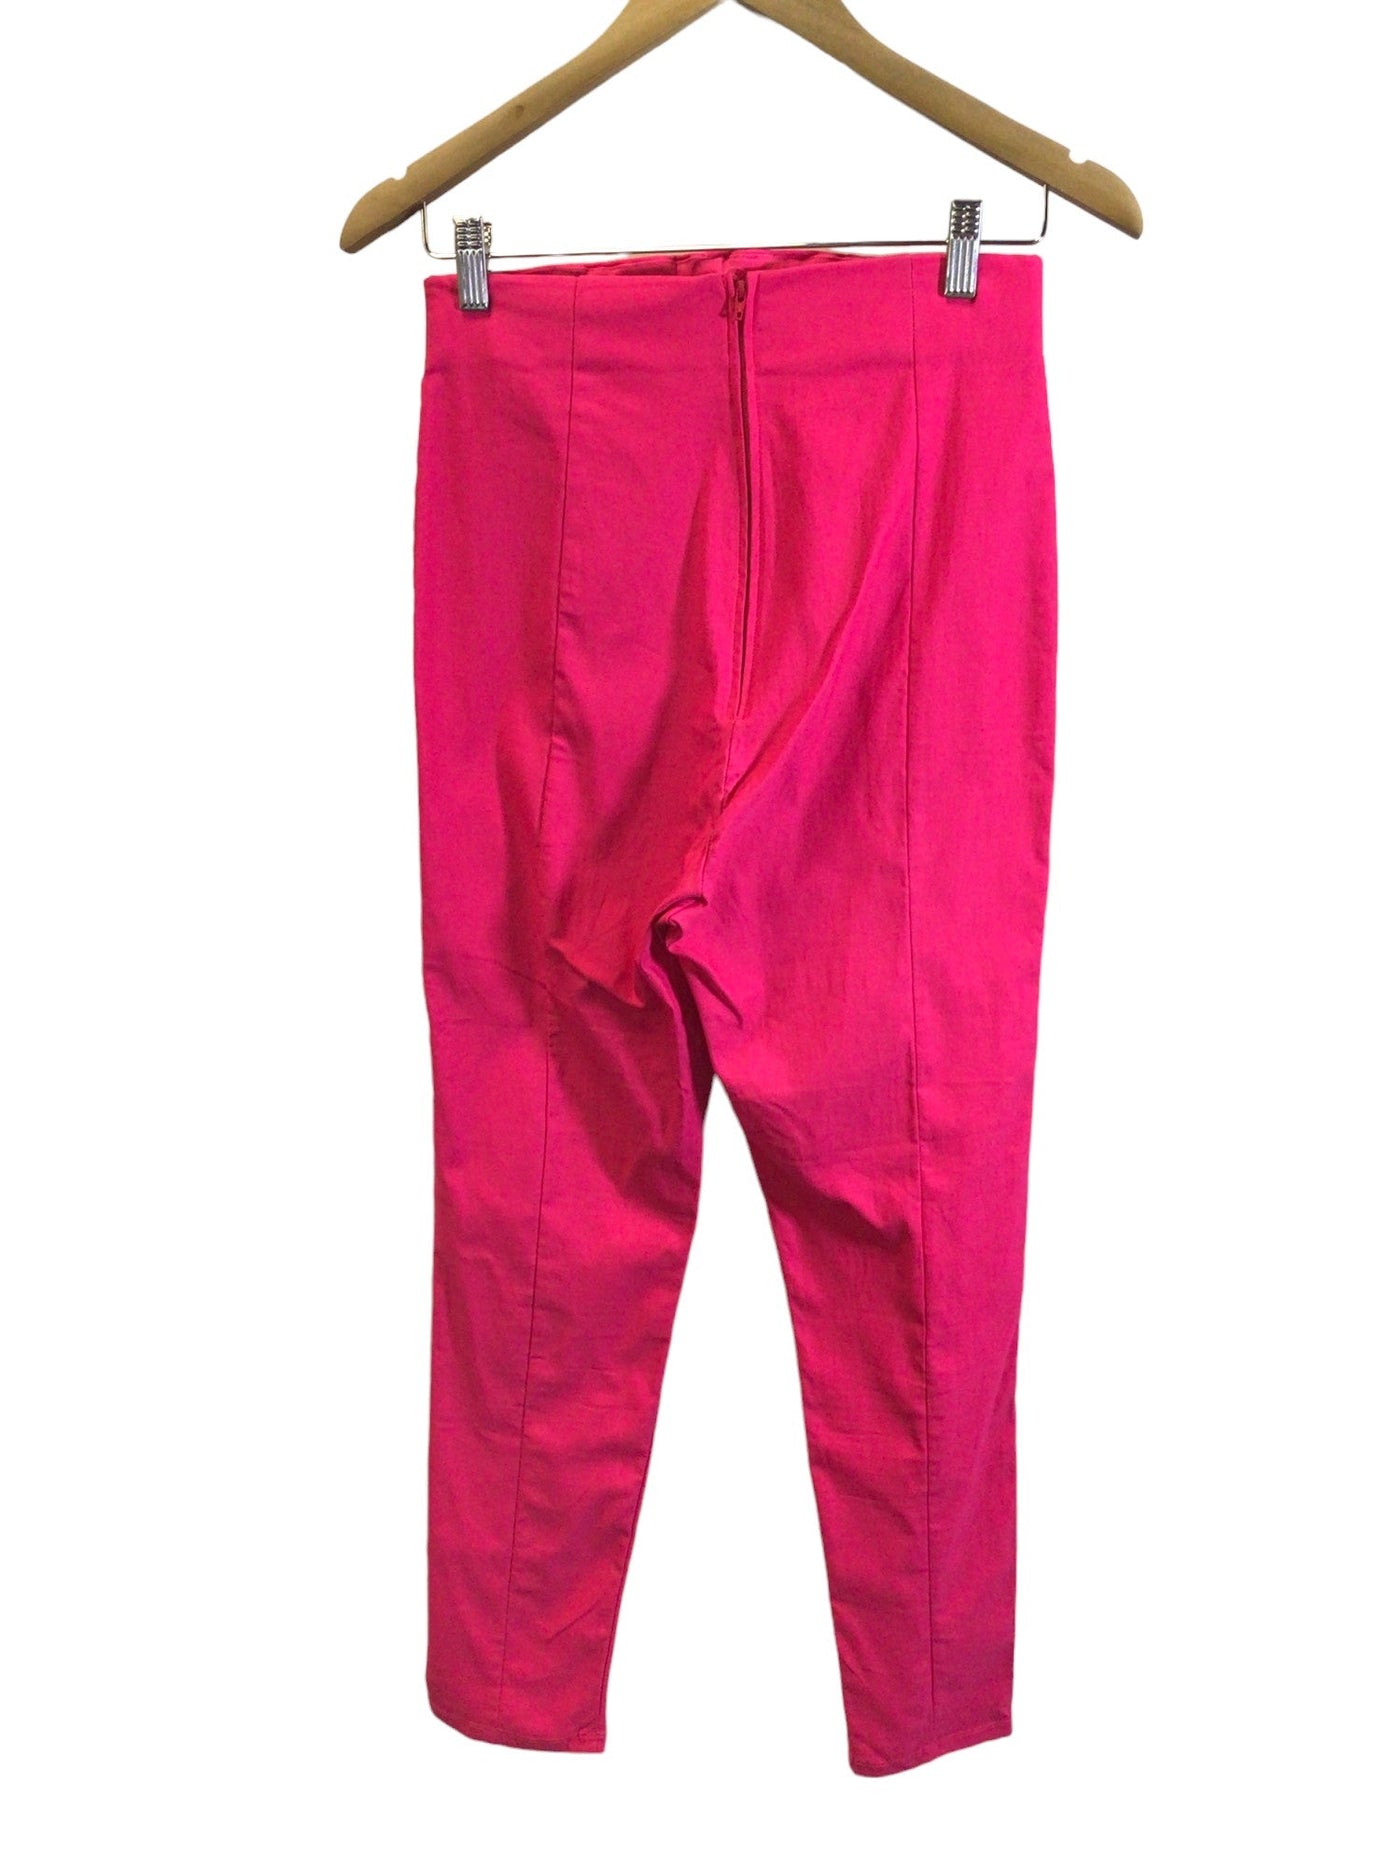 LAURA BYRNES Women Work Pants Regular fit in Pink - Size S | 15 $ KOOP